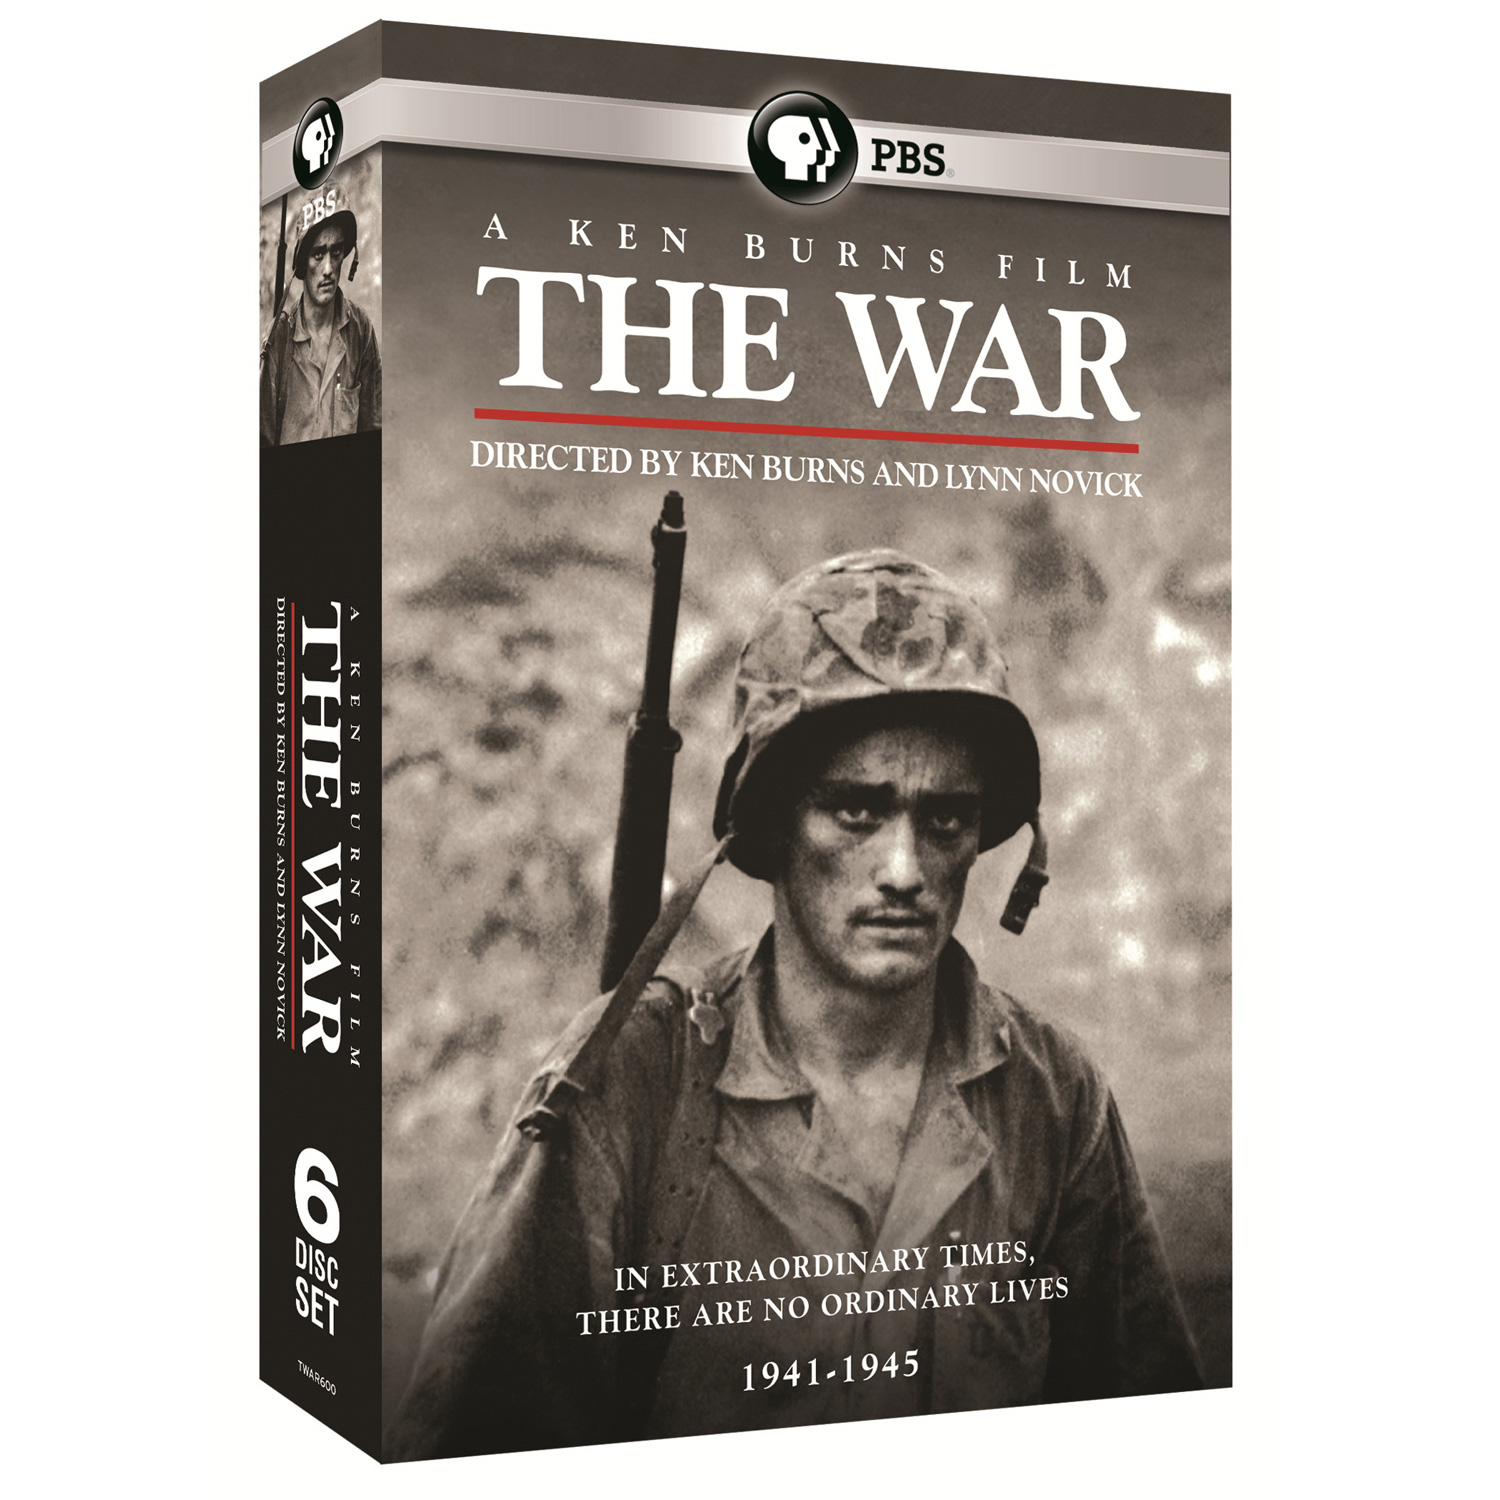 Pisoteando táctica borde Ken Burns - The War DVD and Blu-Ray | Shop.PBS.org